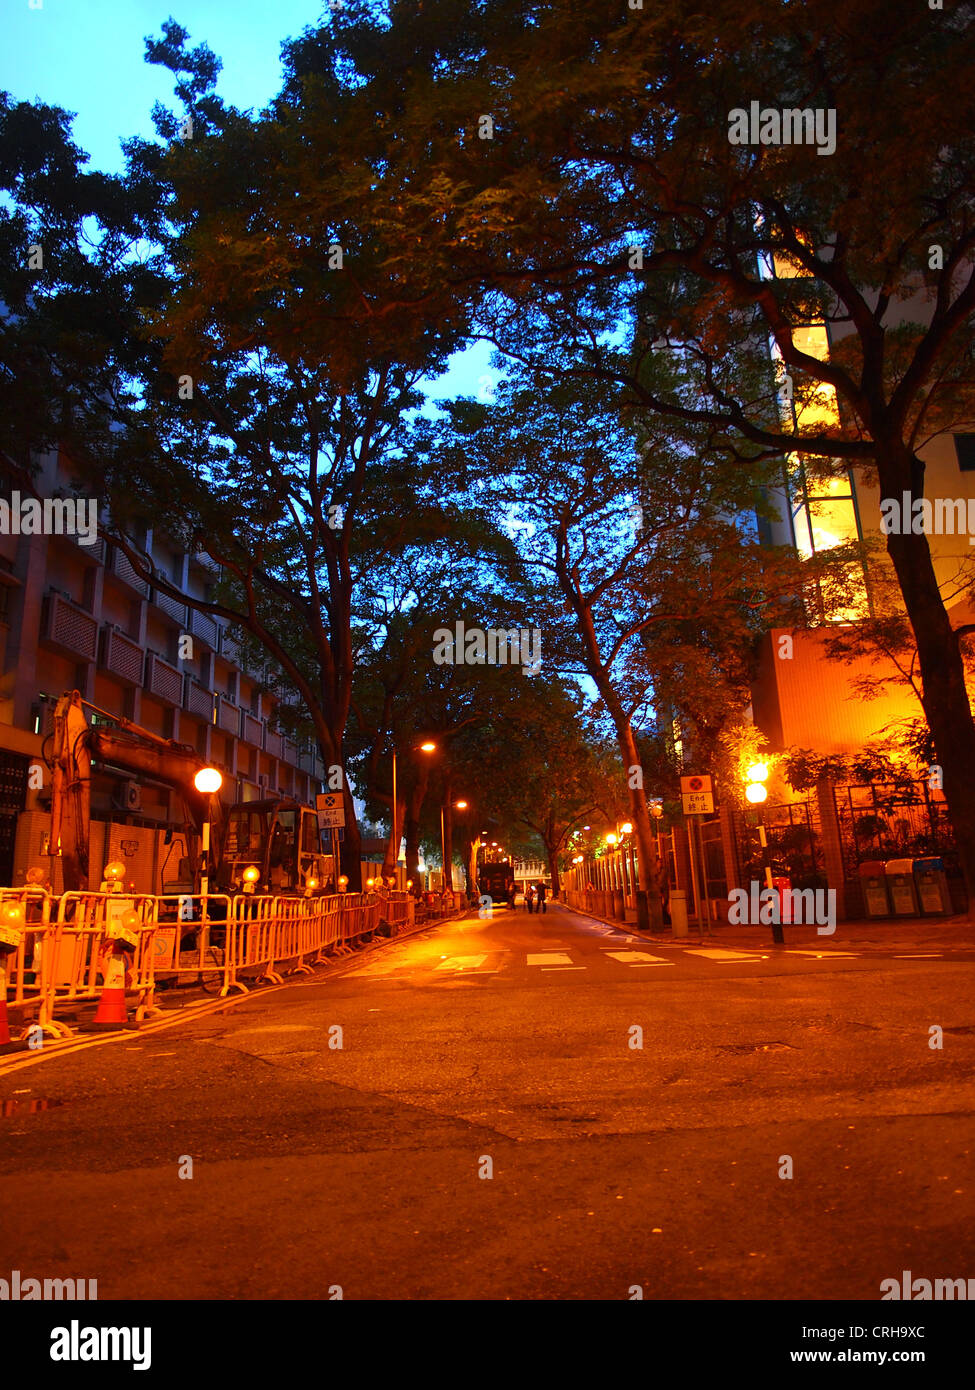 Sentido urbano en la noche Foto de stock